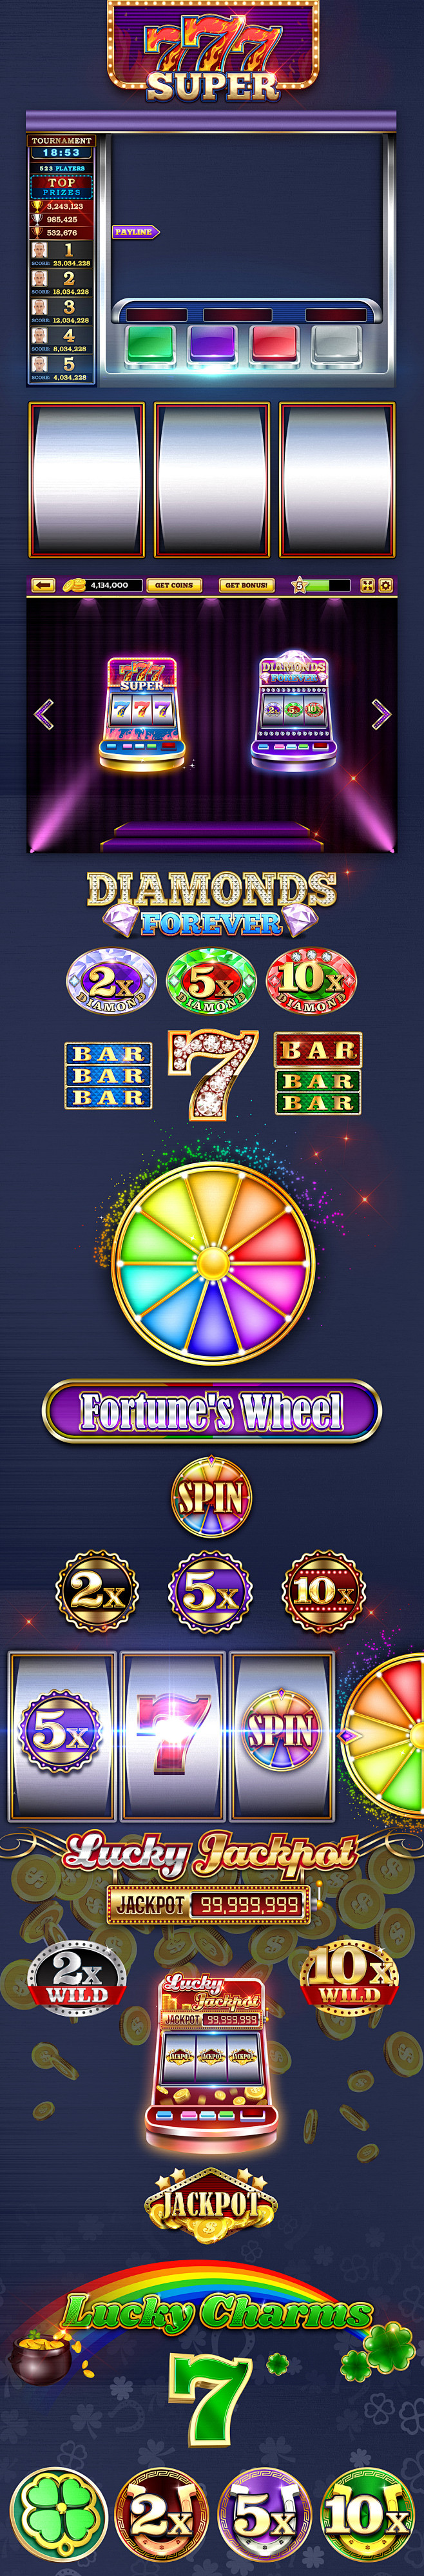 Casino Game Design S...